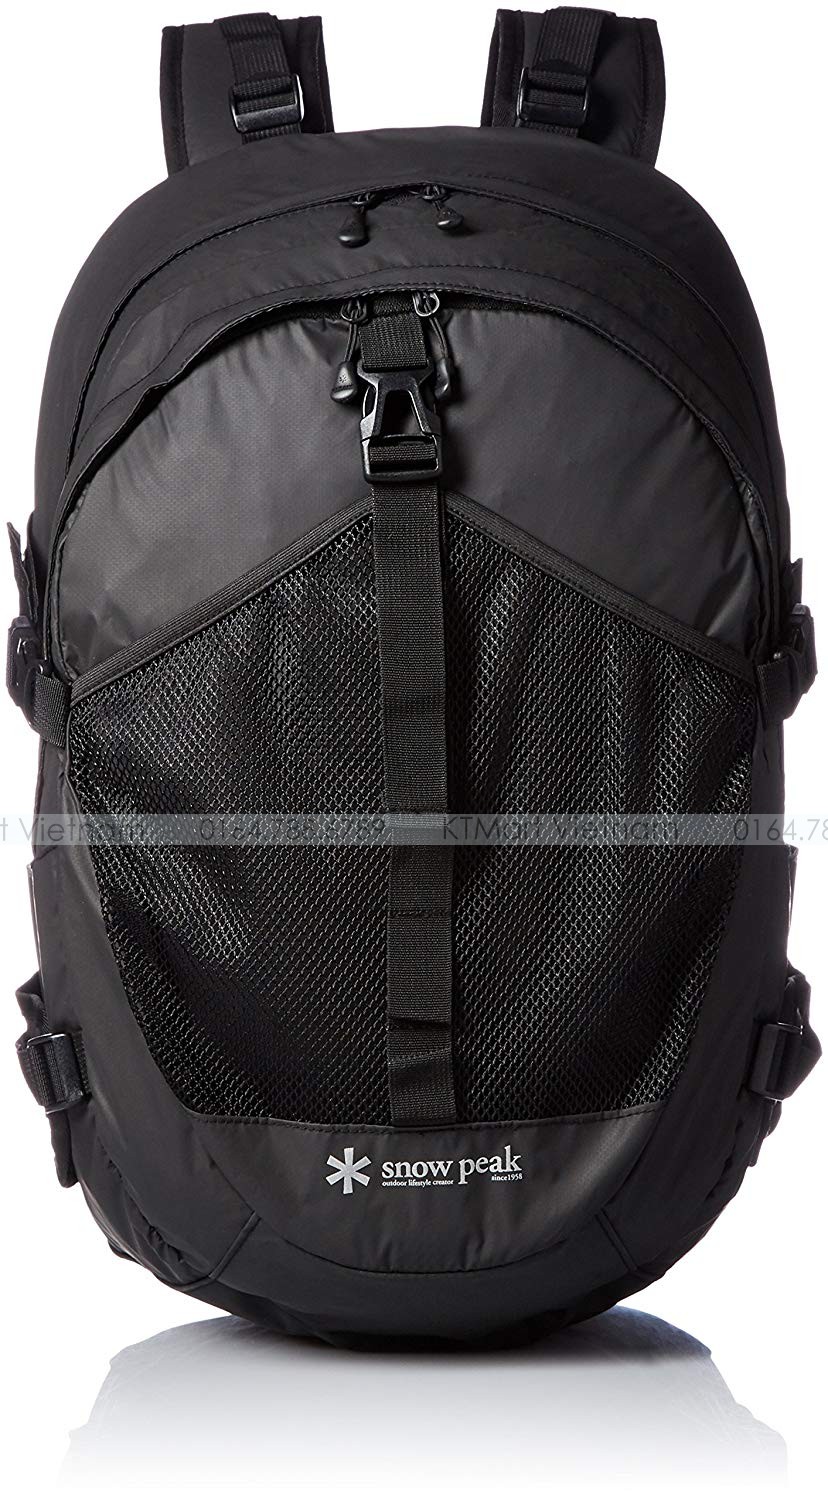 Snowpeak Active Backpack Type02 ONE Black UG-672BK Snowpeak ktmart.vn 9